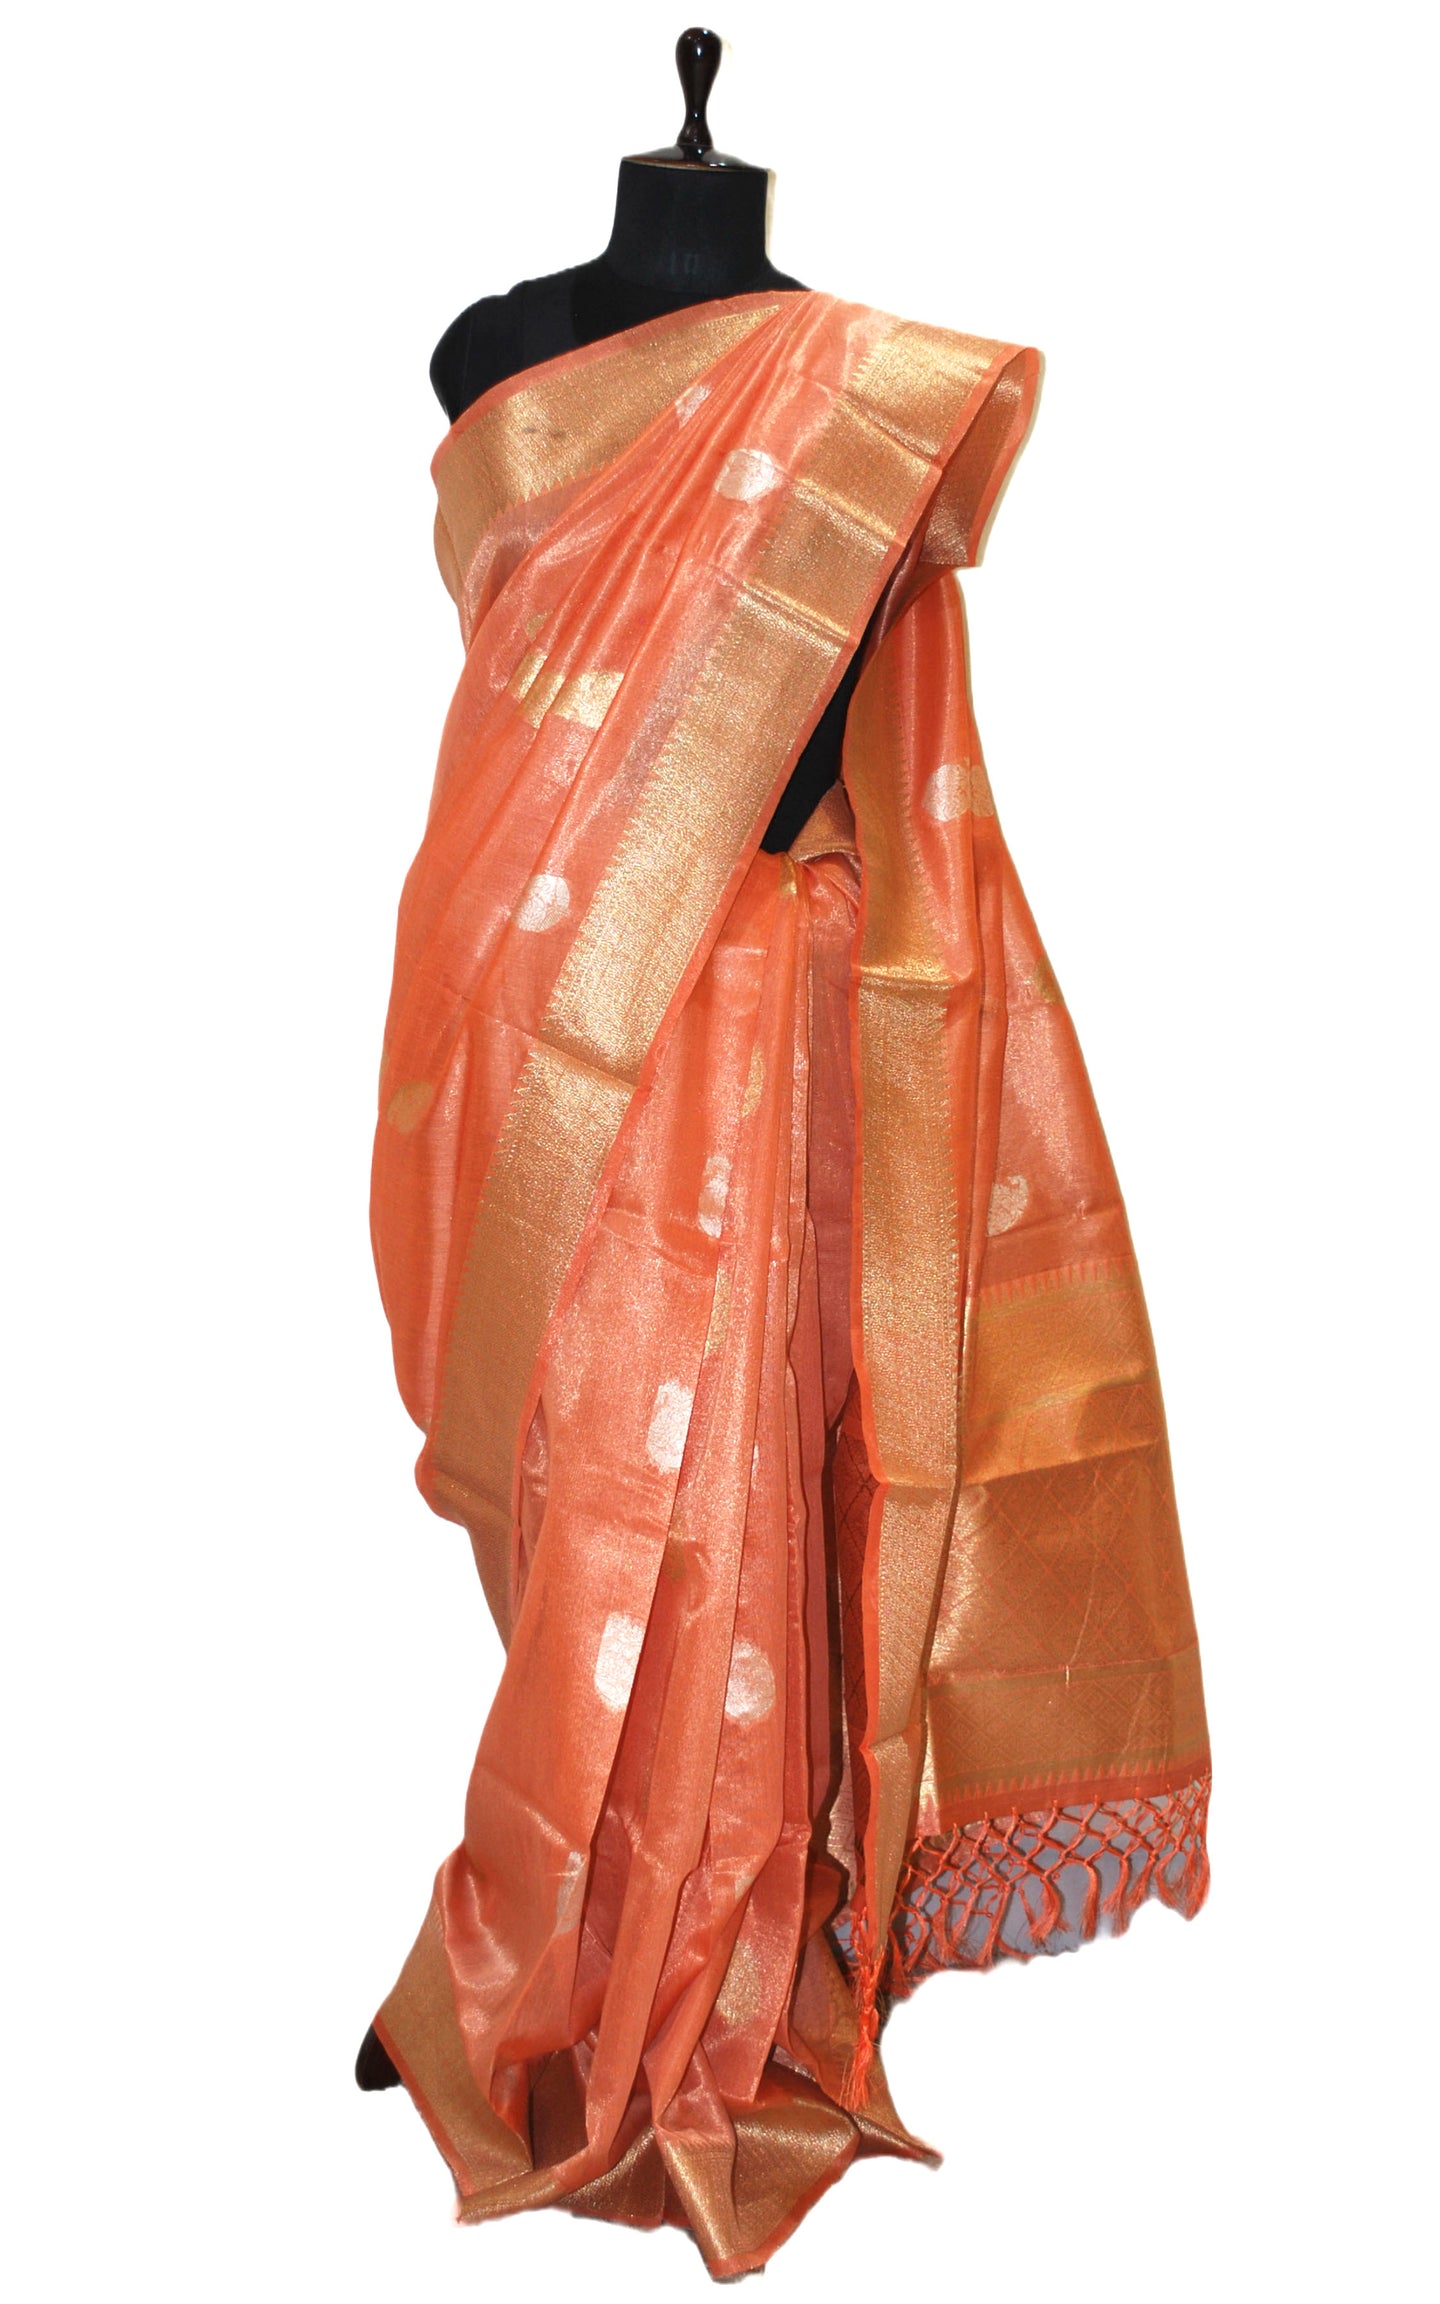 Designer Tissue Banarasi Silk Saree in Cantaloupe, Gold and Silver Zari Work